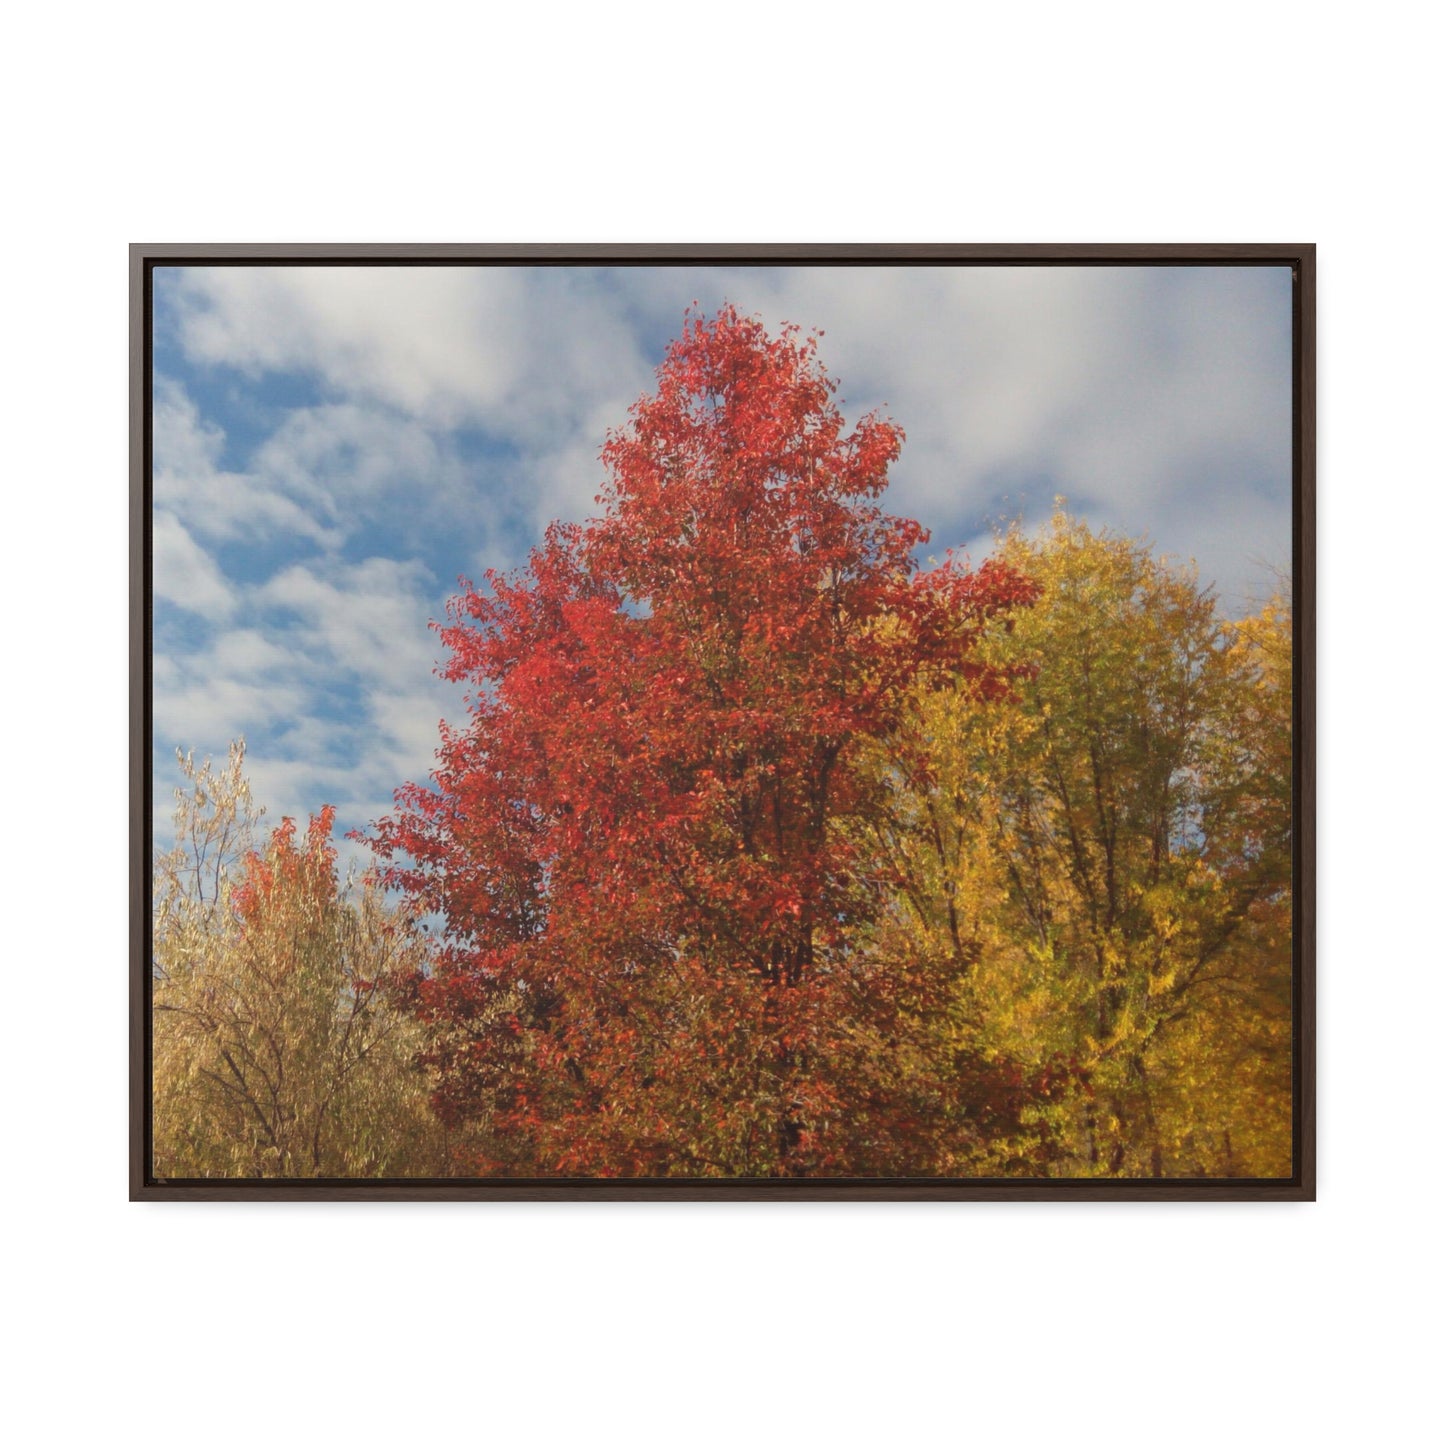 Autumn Sky Gallery Canvas Wraps Framed